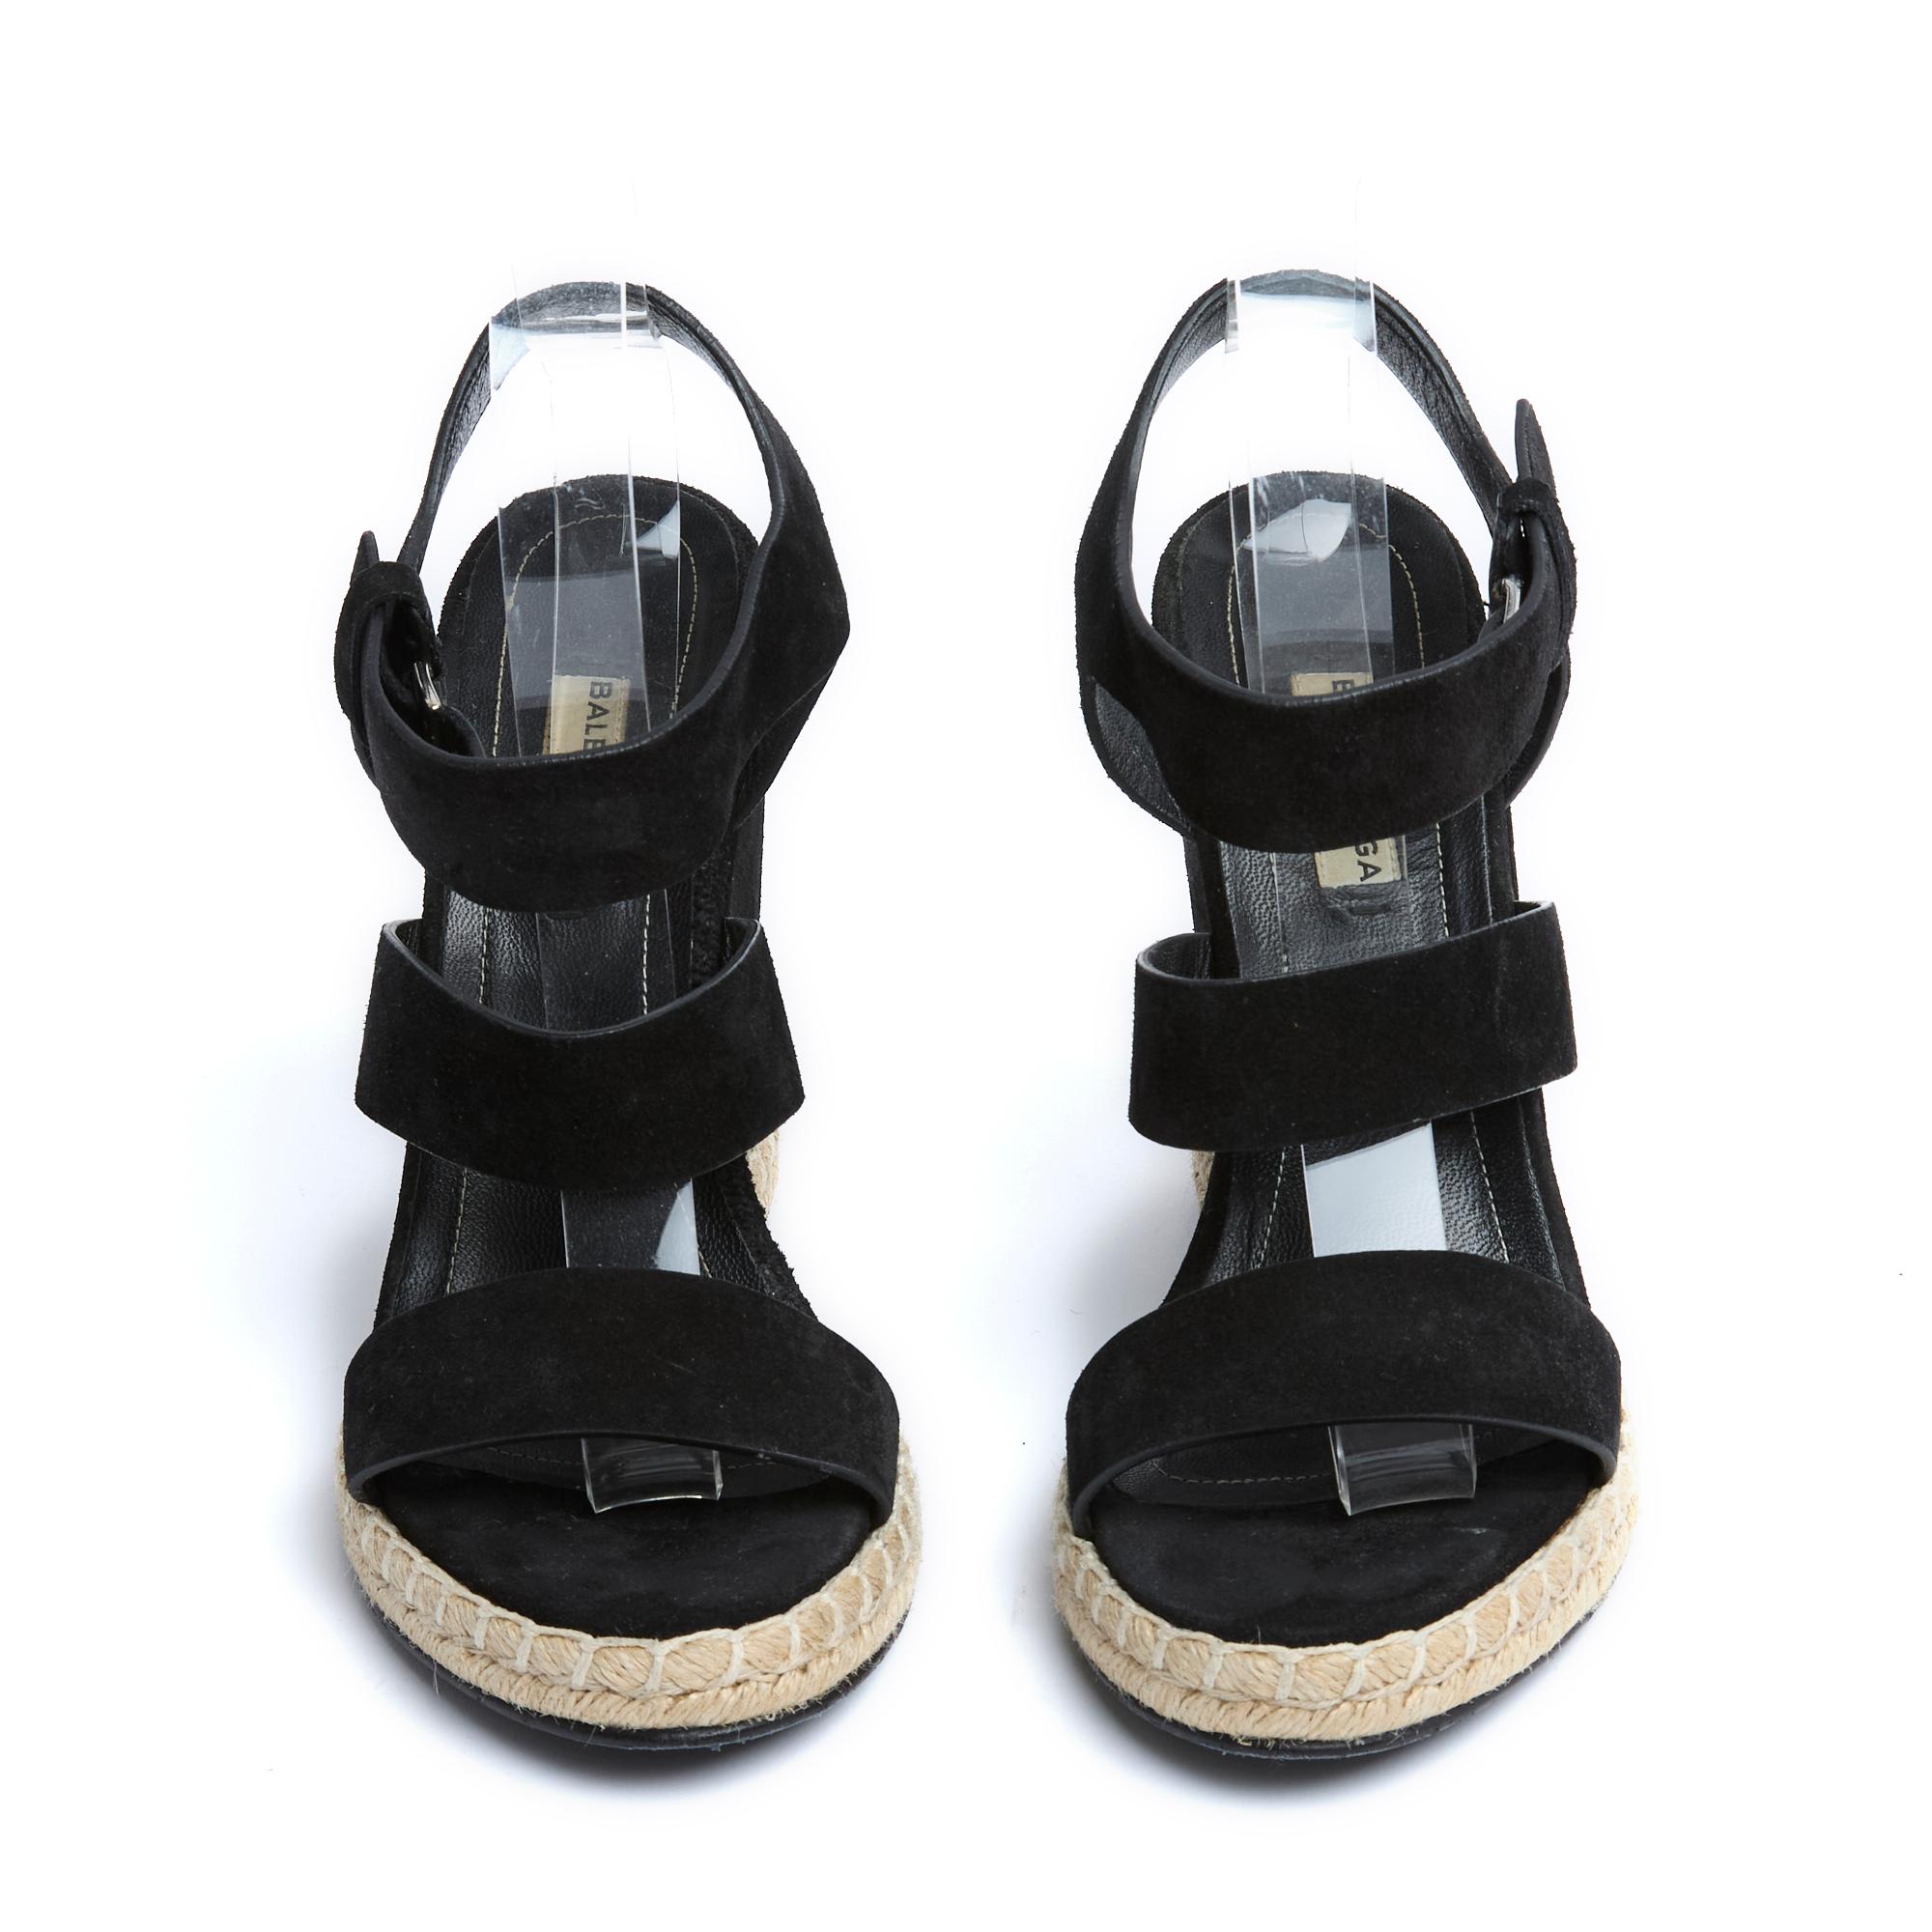 Sandalias de cuña Balenciaga con tiras anchas y suaves de ante negro forradas de piel, tacón forrado de ante, suela de 